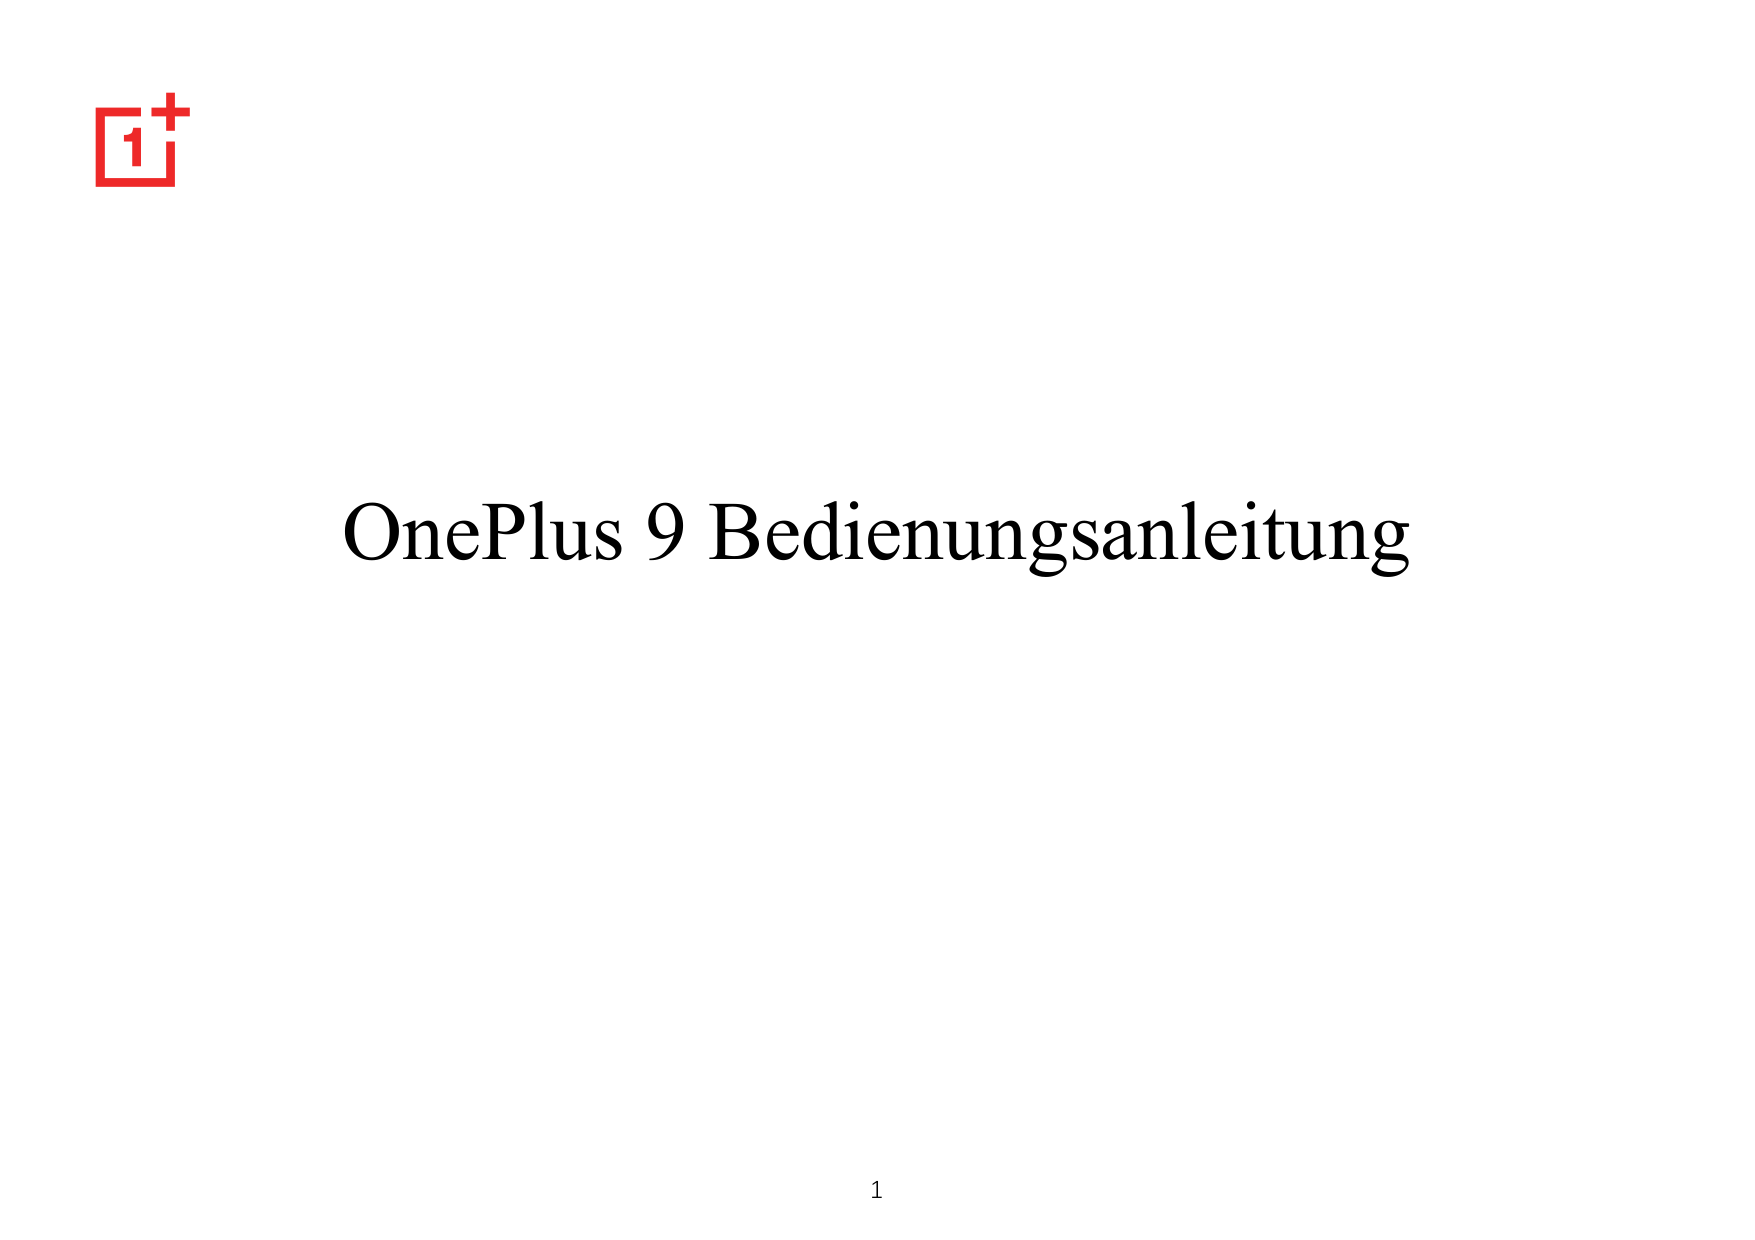 OnePlus 9 Bedienungsanleitung1